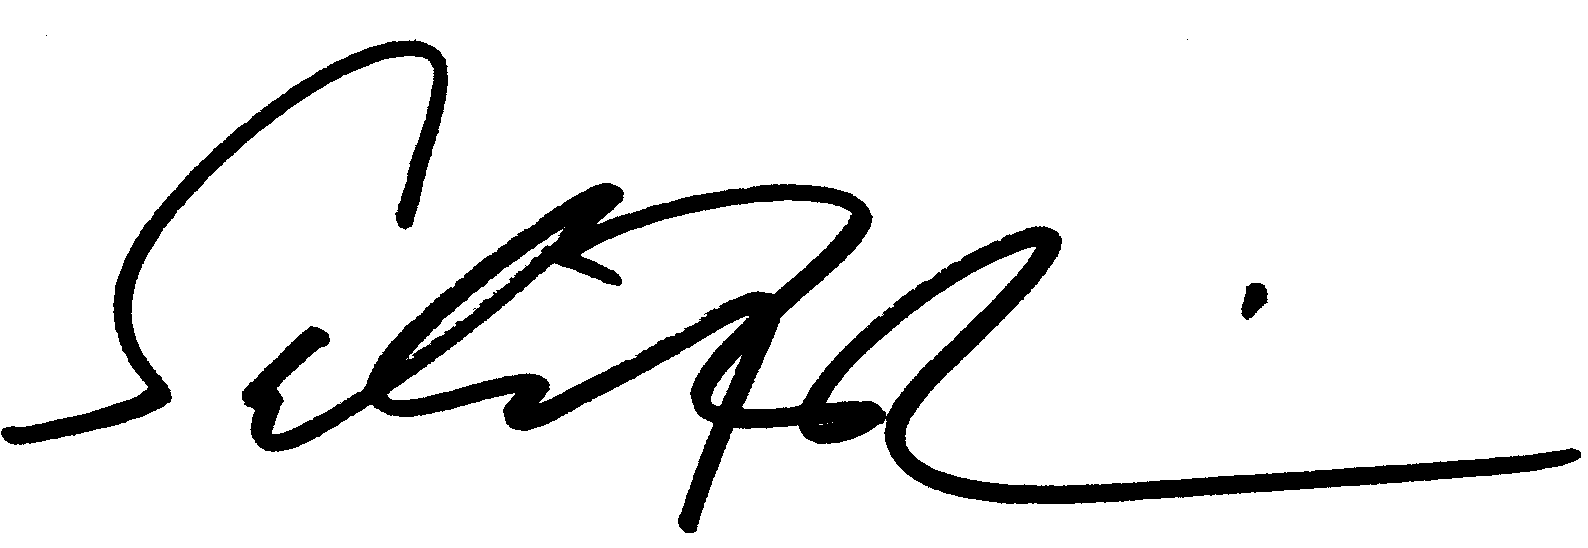 Salman Rushdie autograph facsimile